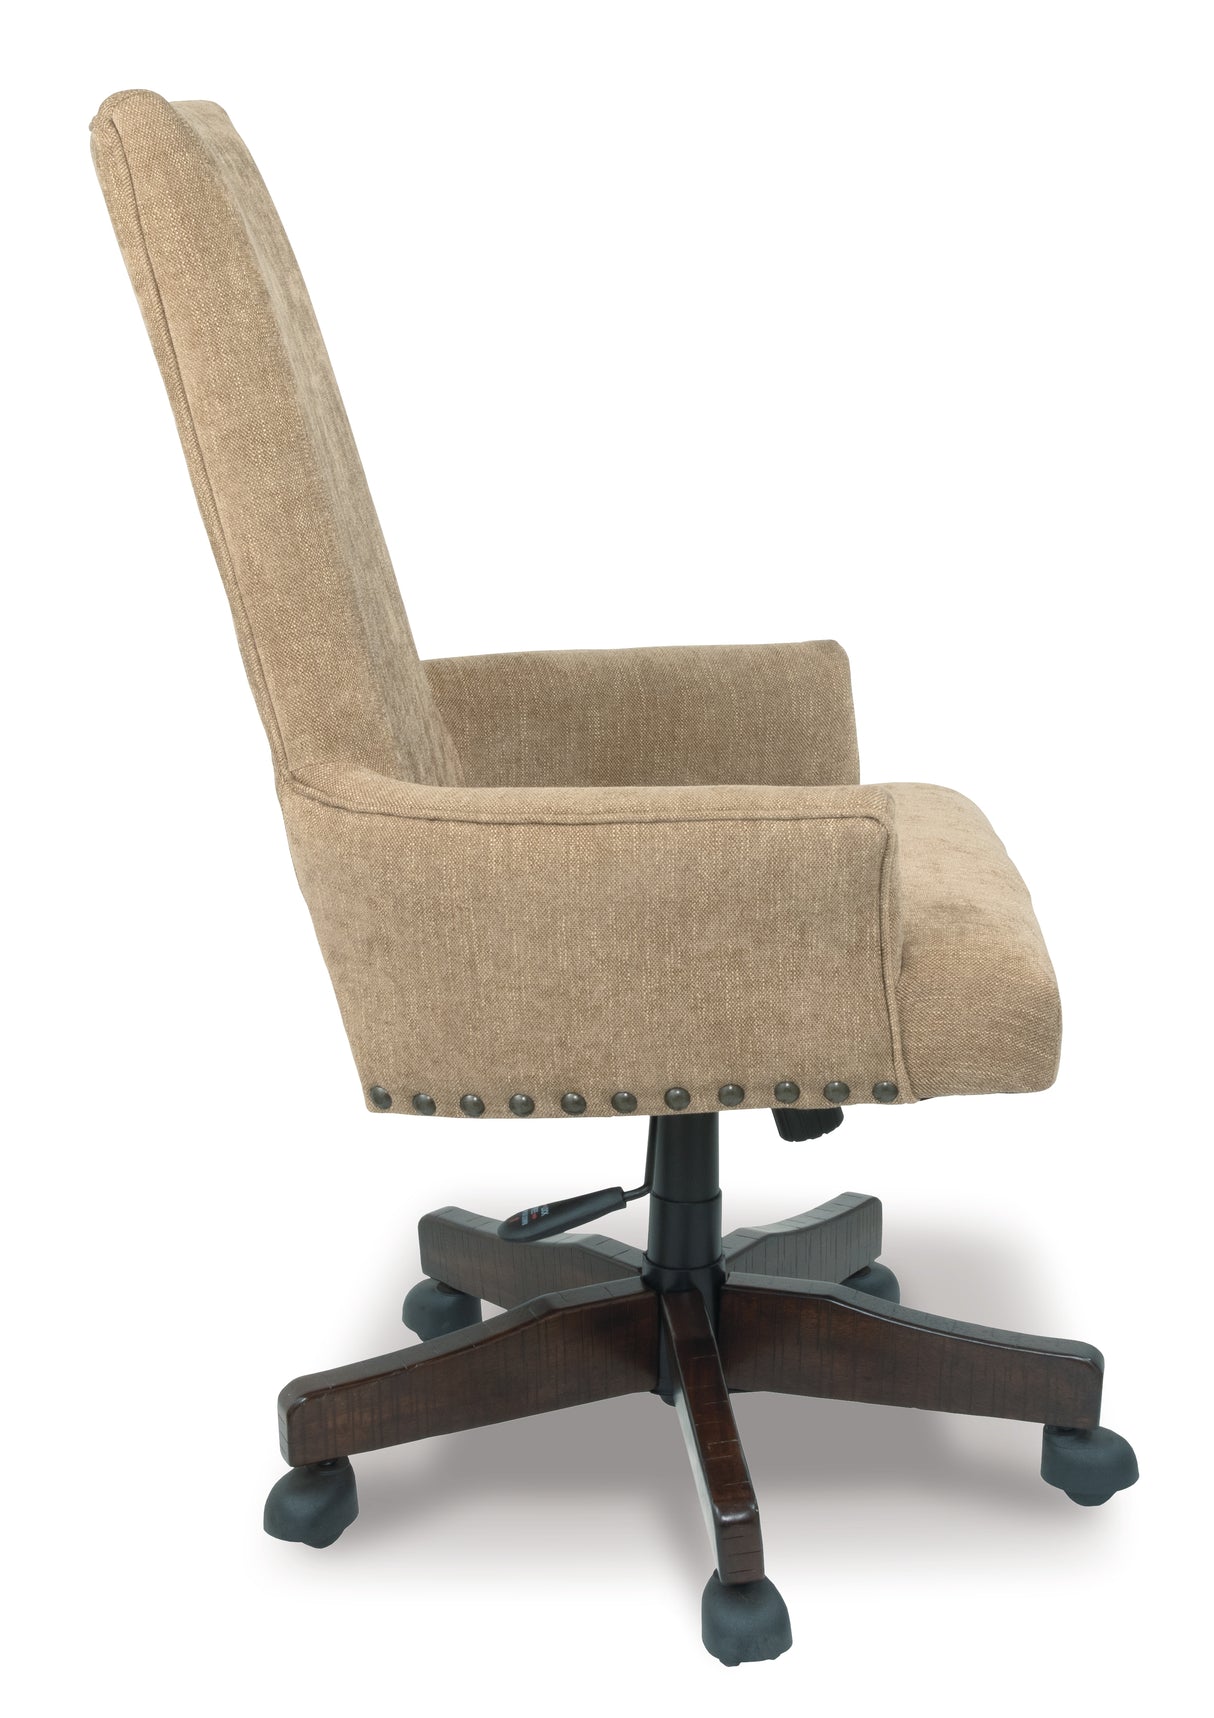 Baldridge Light Brown Home Office Desk Chair